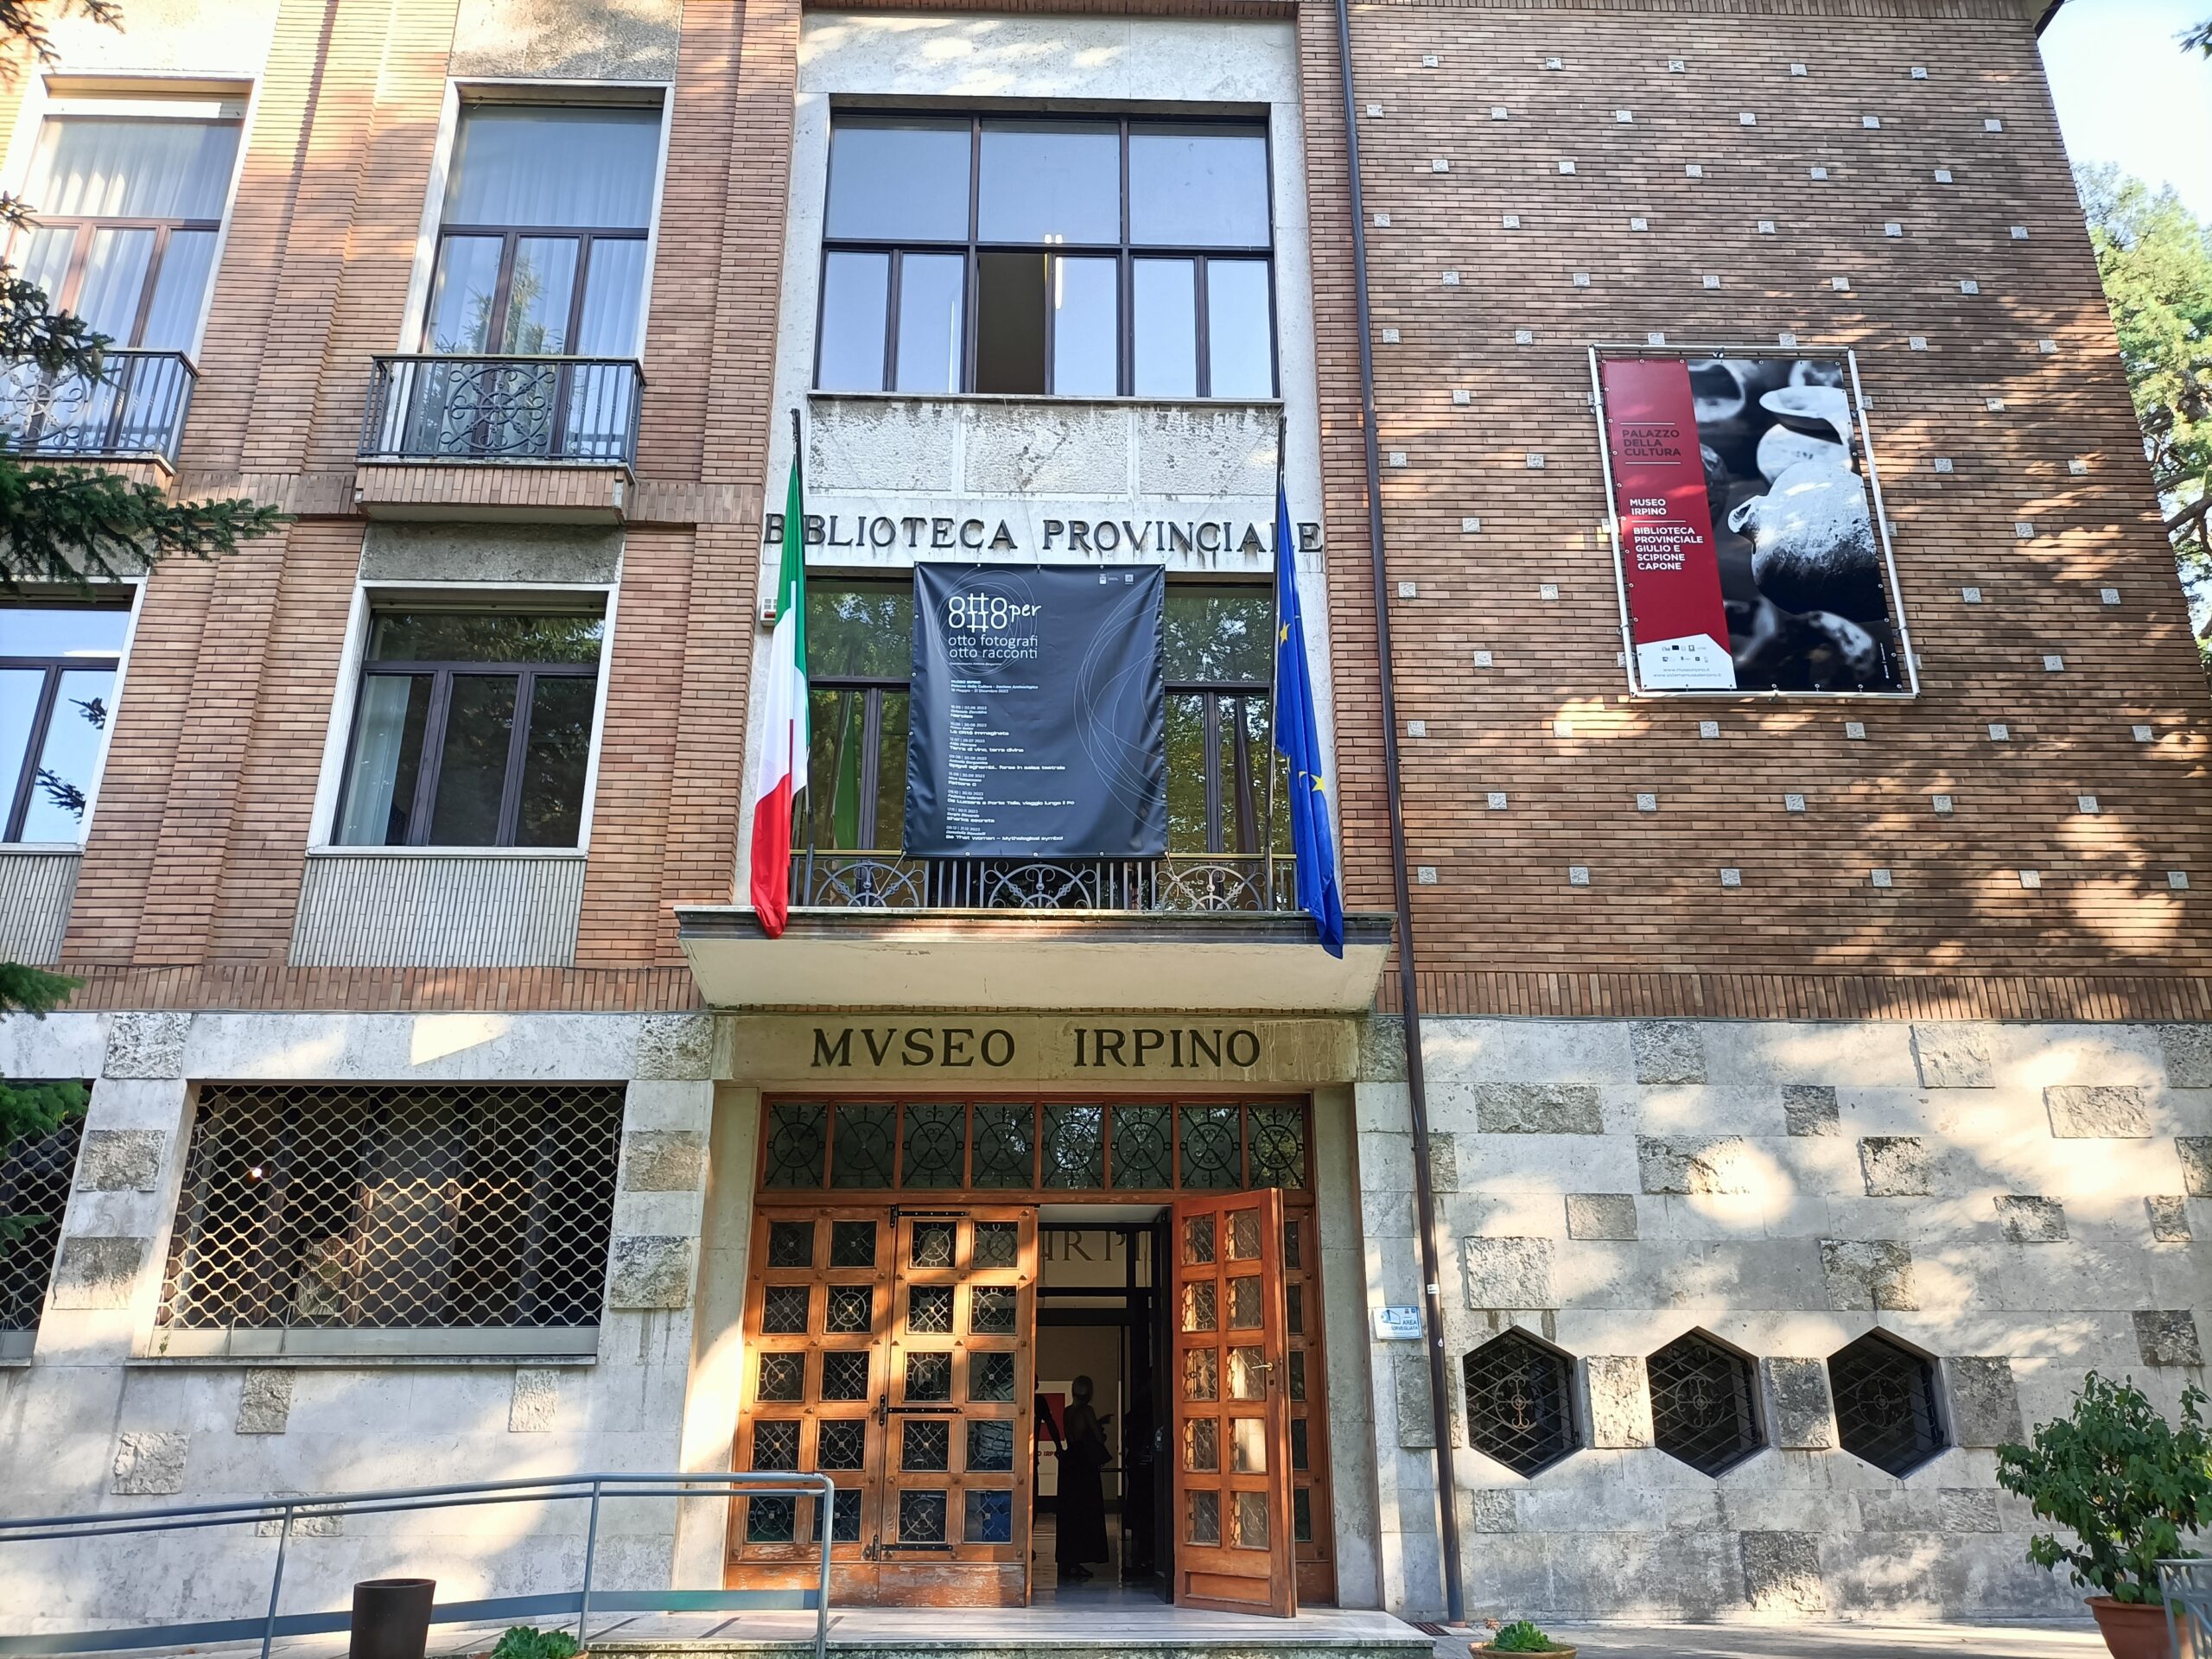 Avellino| “A Palazzo”, entrano nel vivo gli appuntamenti musicali organizzati da Sistema Irpinia